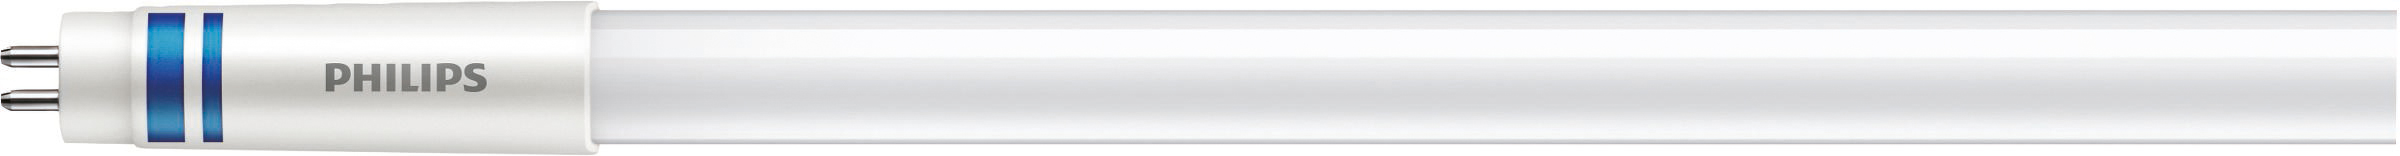 Philips Lighting LED-Tube T5 f. EVG G5, 840, 1449mm MAS LEDtube#74959000